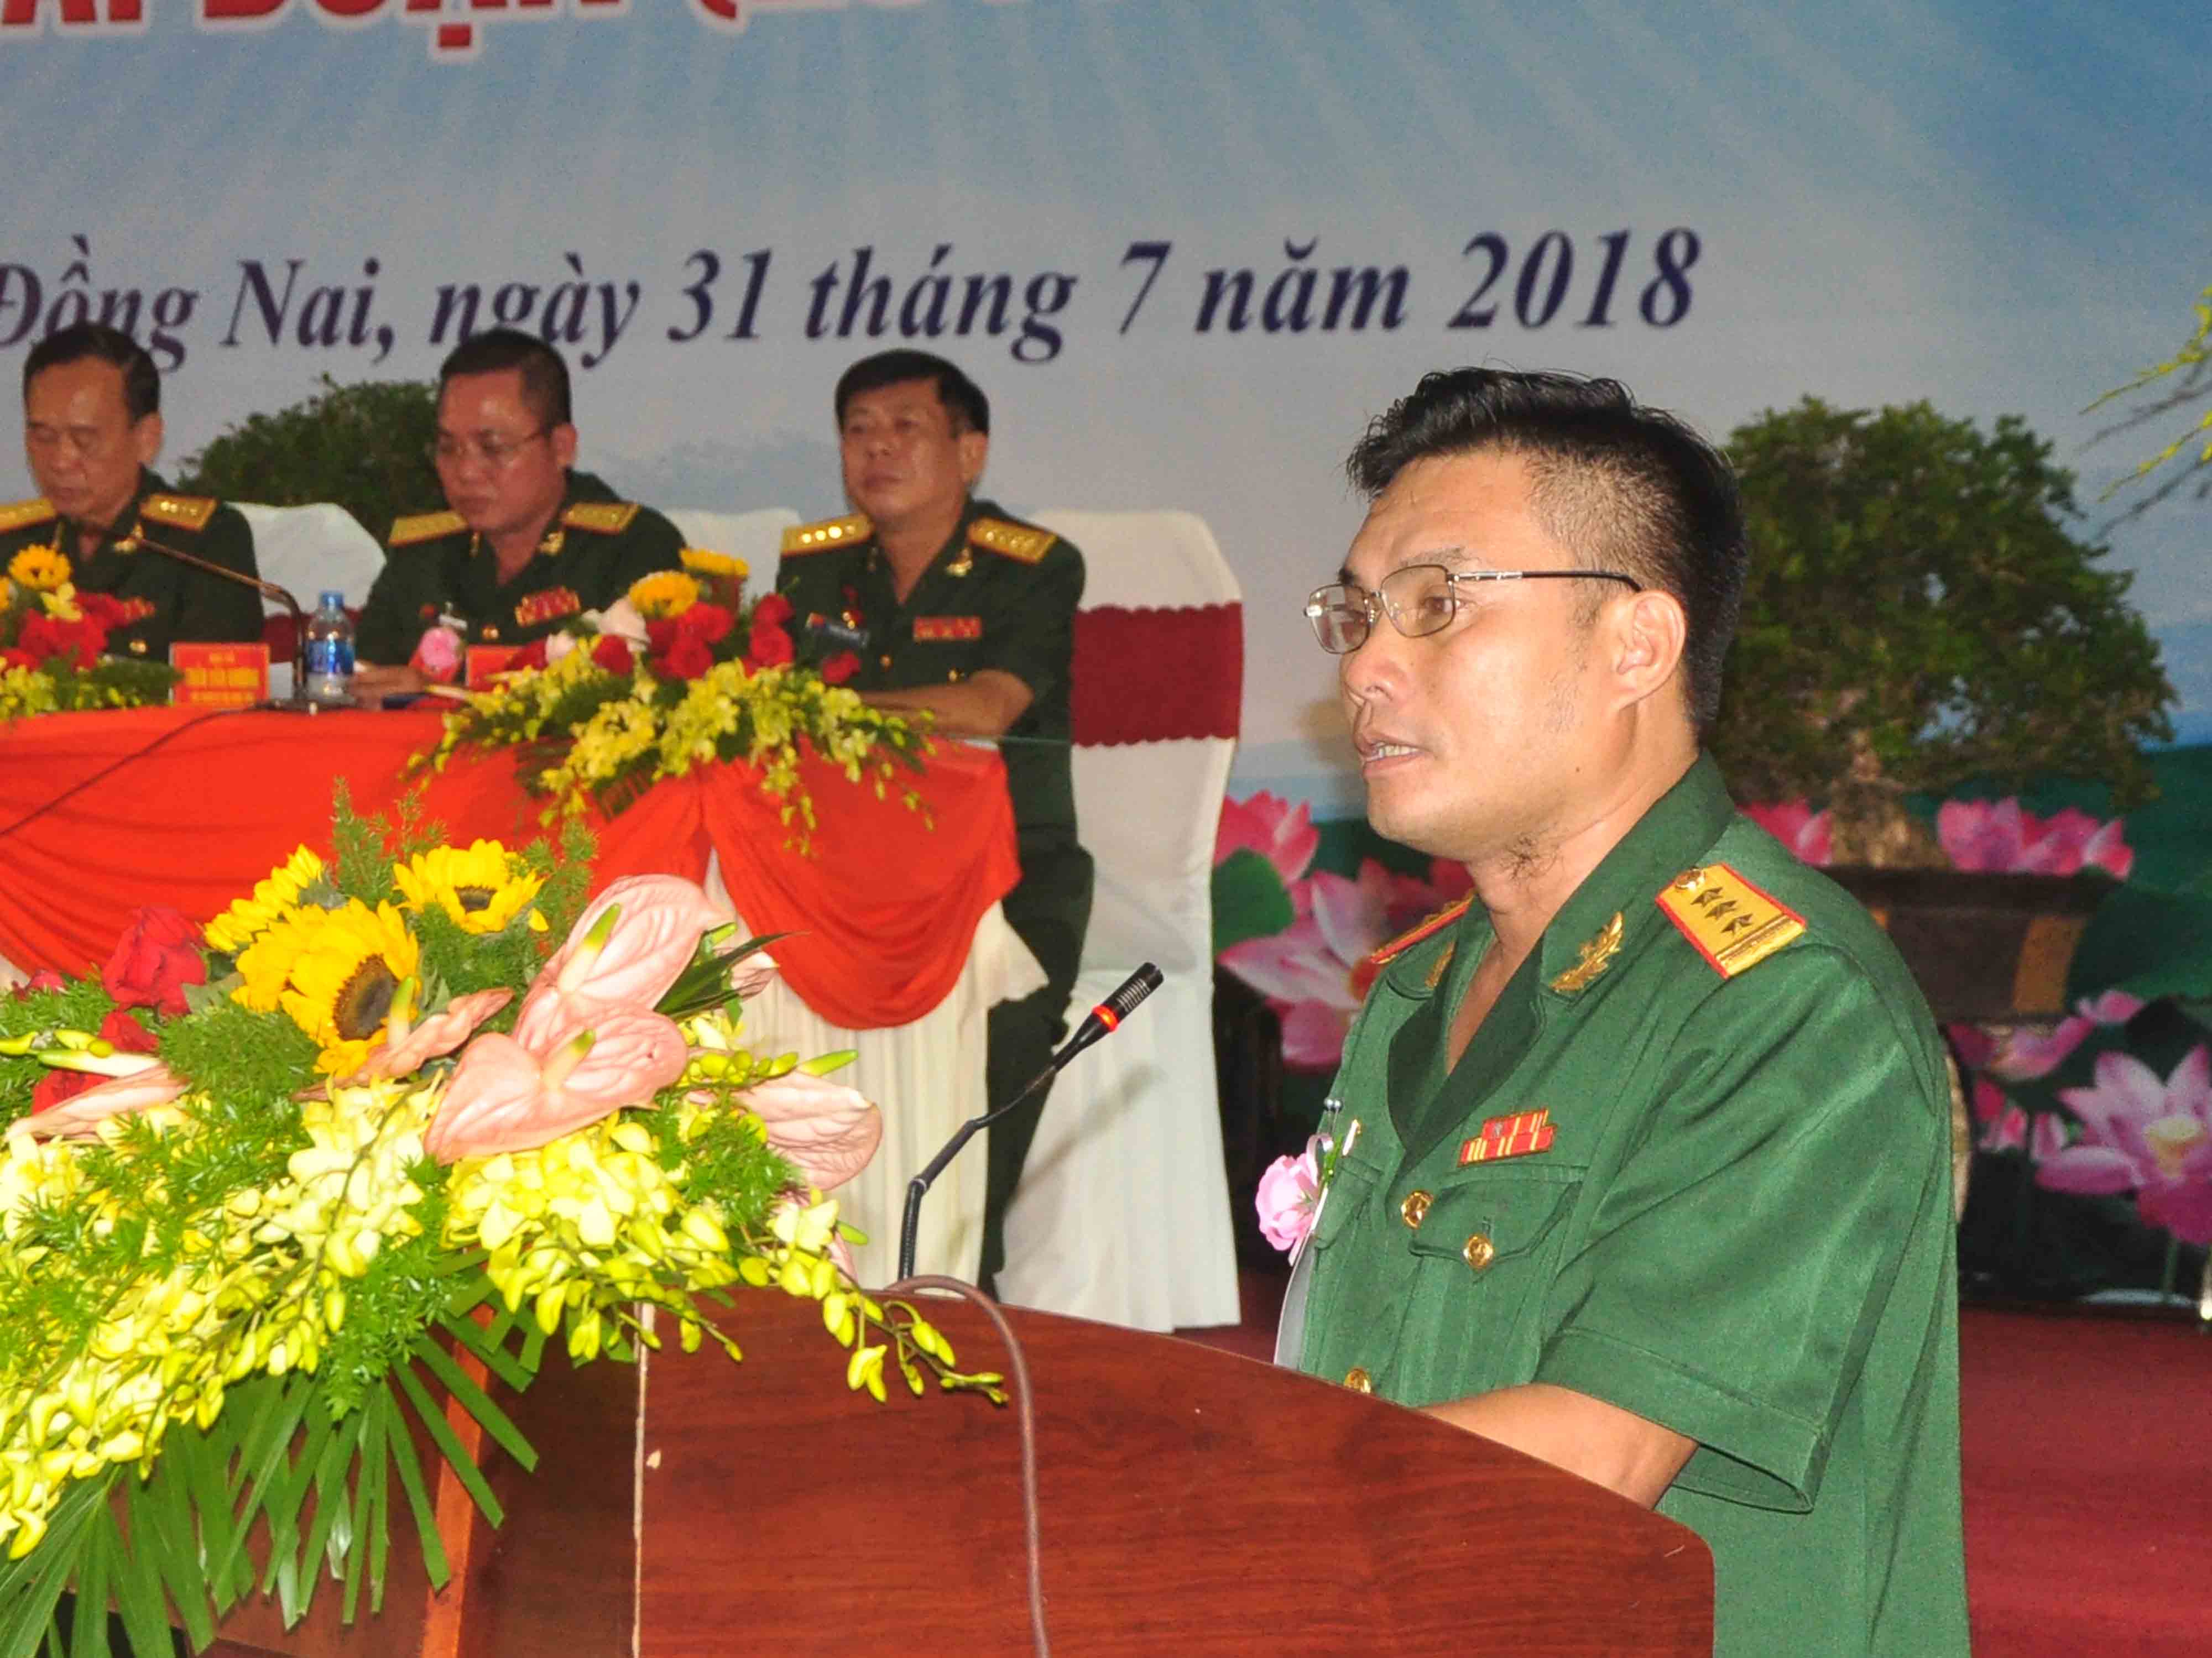 Thượng tá Bùi Tấn Mẫn, Chính trị viên Ban Chỉ huy quân sự huyện Thống Nhất trình bày về hoạt động họp mặt chức sắc, chức việc các tôn giáo vào dịp đầu năm (ảnh: Minh Thành)